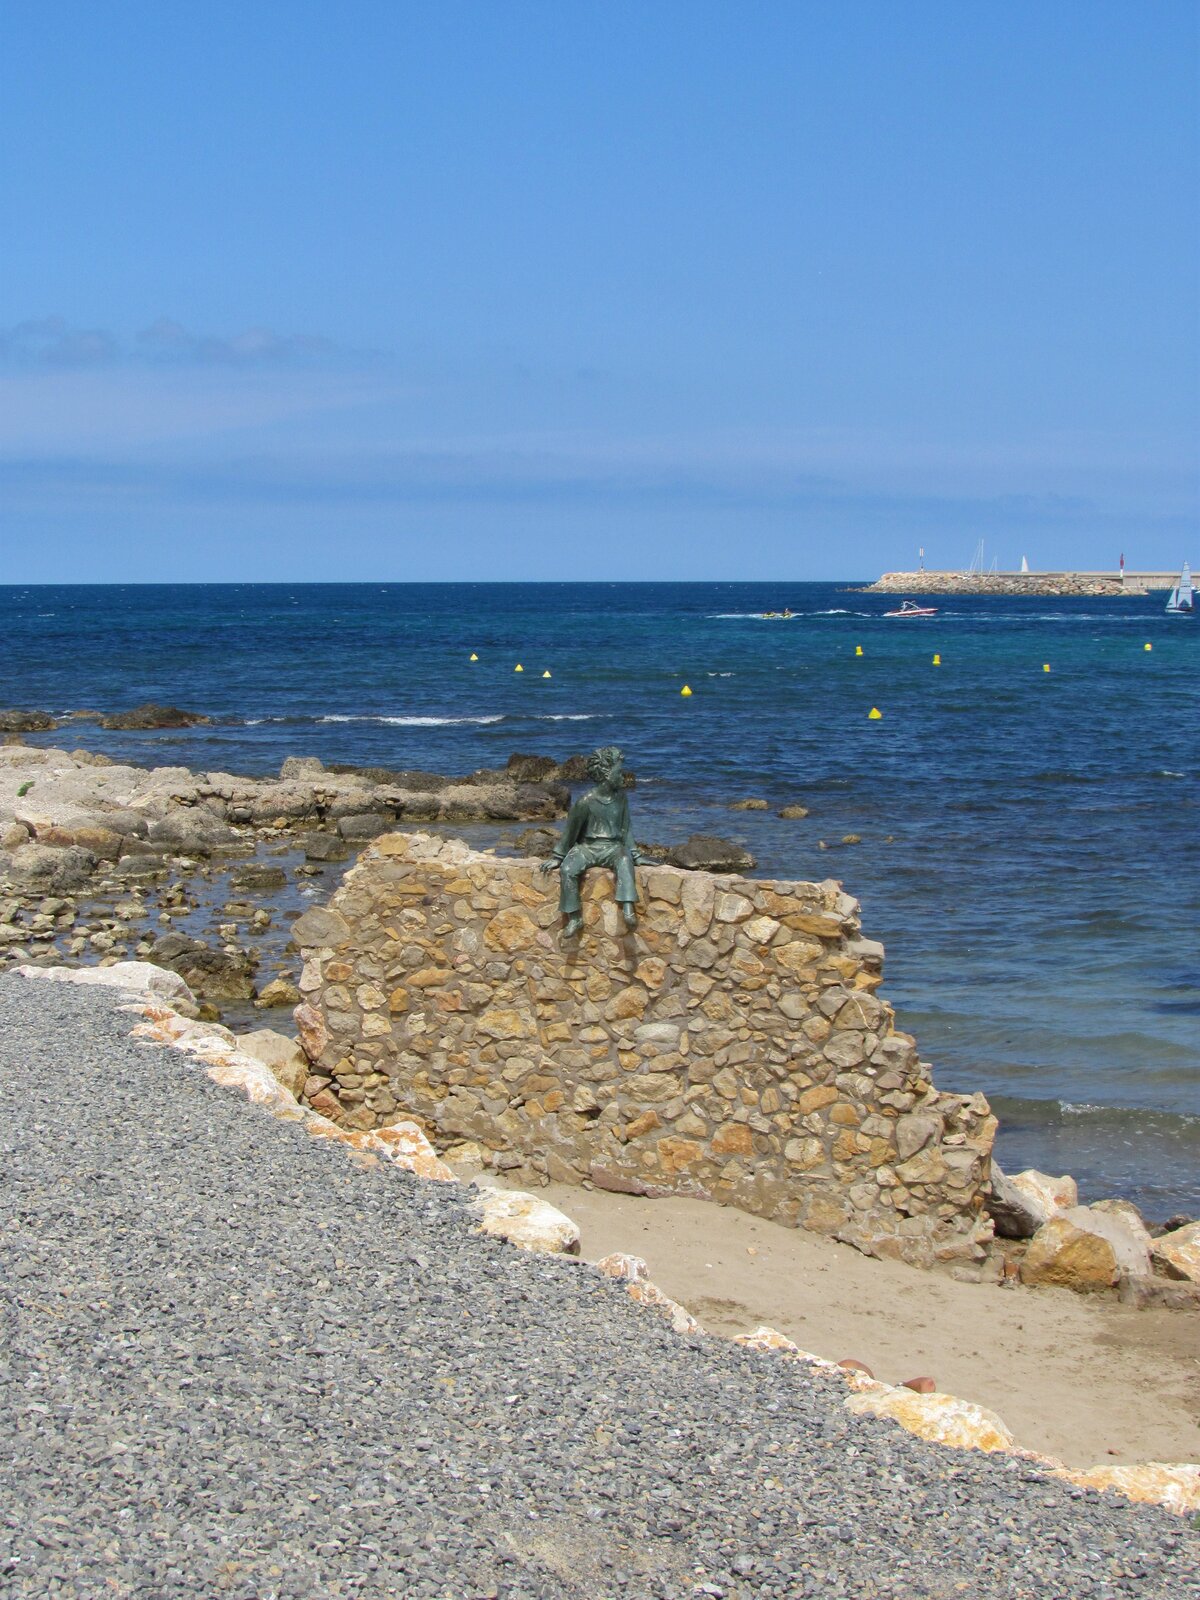 Na zdjęciu widoczna jest umiejscowiona w centrum rzeźba Małego Księcia, która siedzi na kamiennym murze i patrzy w prawo. W lewym dolnym rogu widoczny jest kamienisty brzeg. W tle morze i niebieskie bezchmurne niebo. 